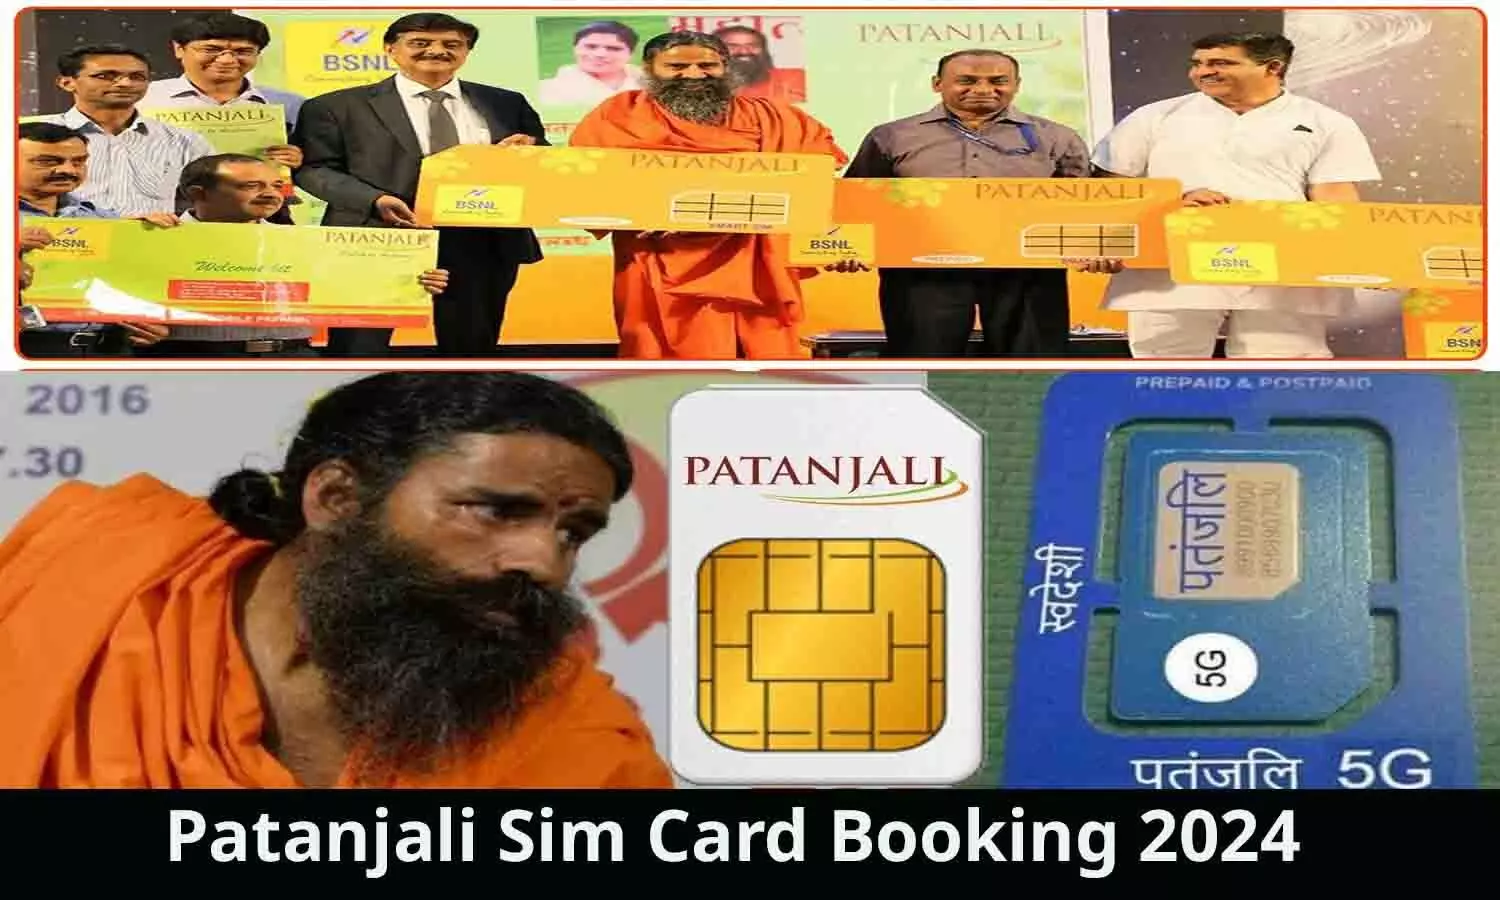 Patanjali Sim Card Online Booking 2024: मात्र 144 रुपये में फ्री कॉलिंग के साथ मिलगा अनलिमिटेड डाटा, बुकिंग होगी शुरू, जानें वायरल मैसेज की सच्चाई